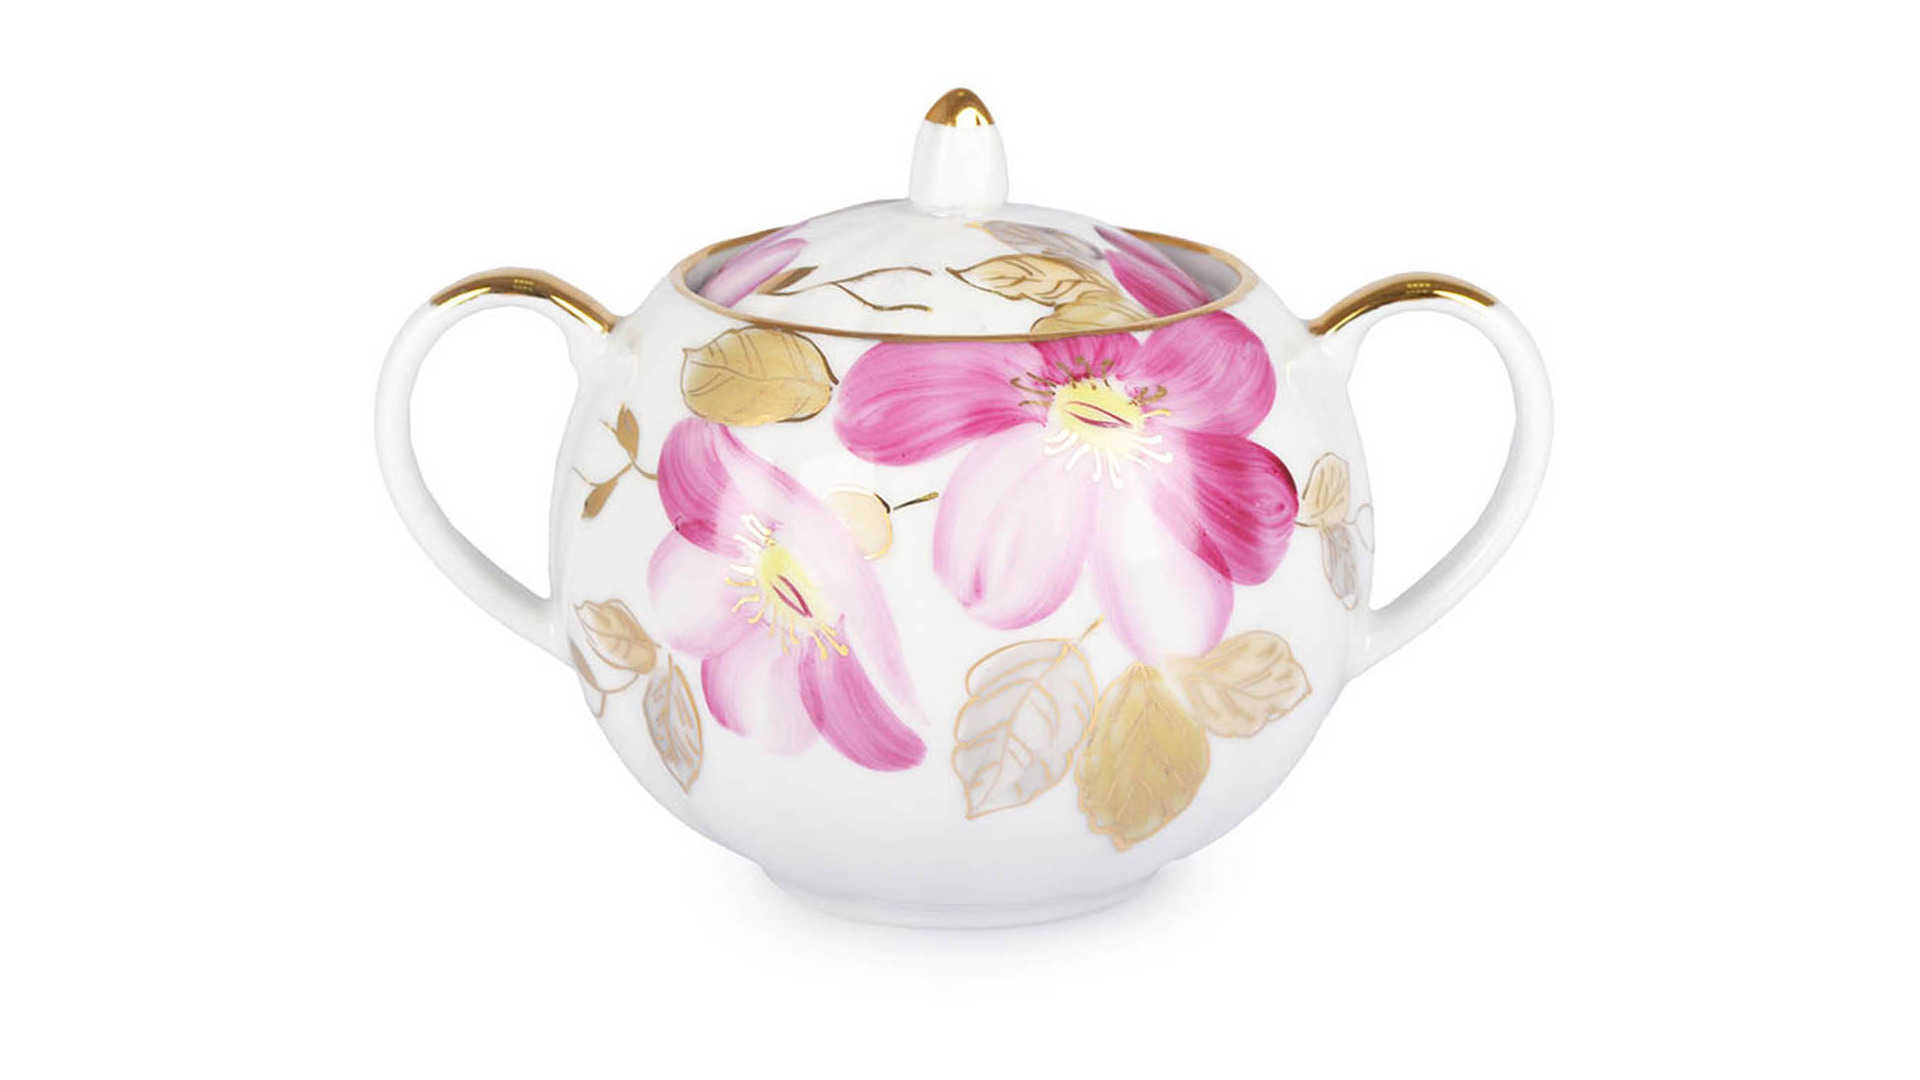 Сервиз чайный Дулевский фарфоровый завод Тюльпан Пурпуровый цветок на 6 персон 15 предметов, фарфор